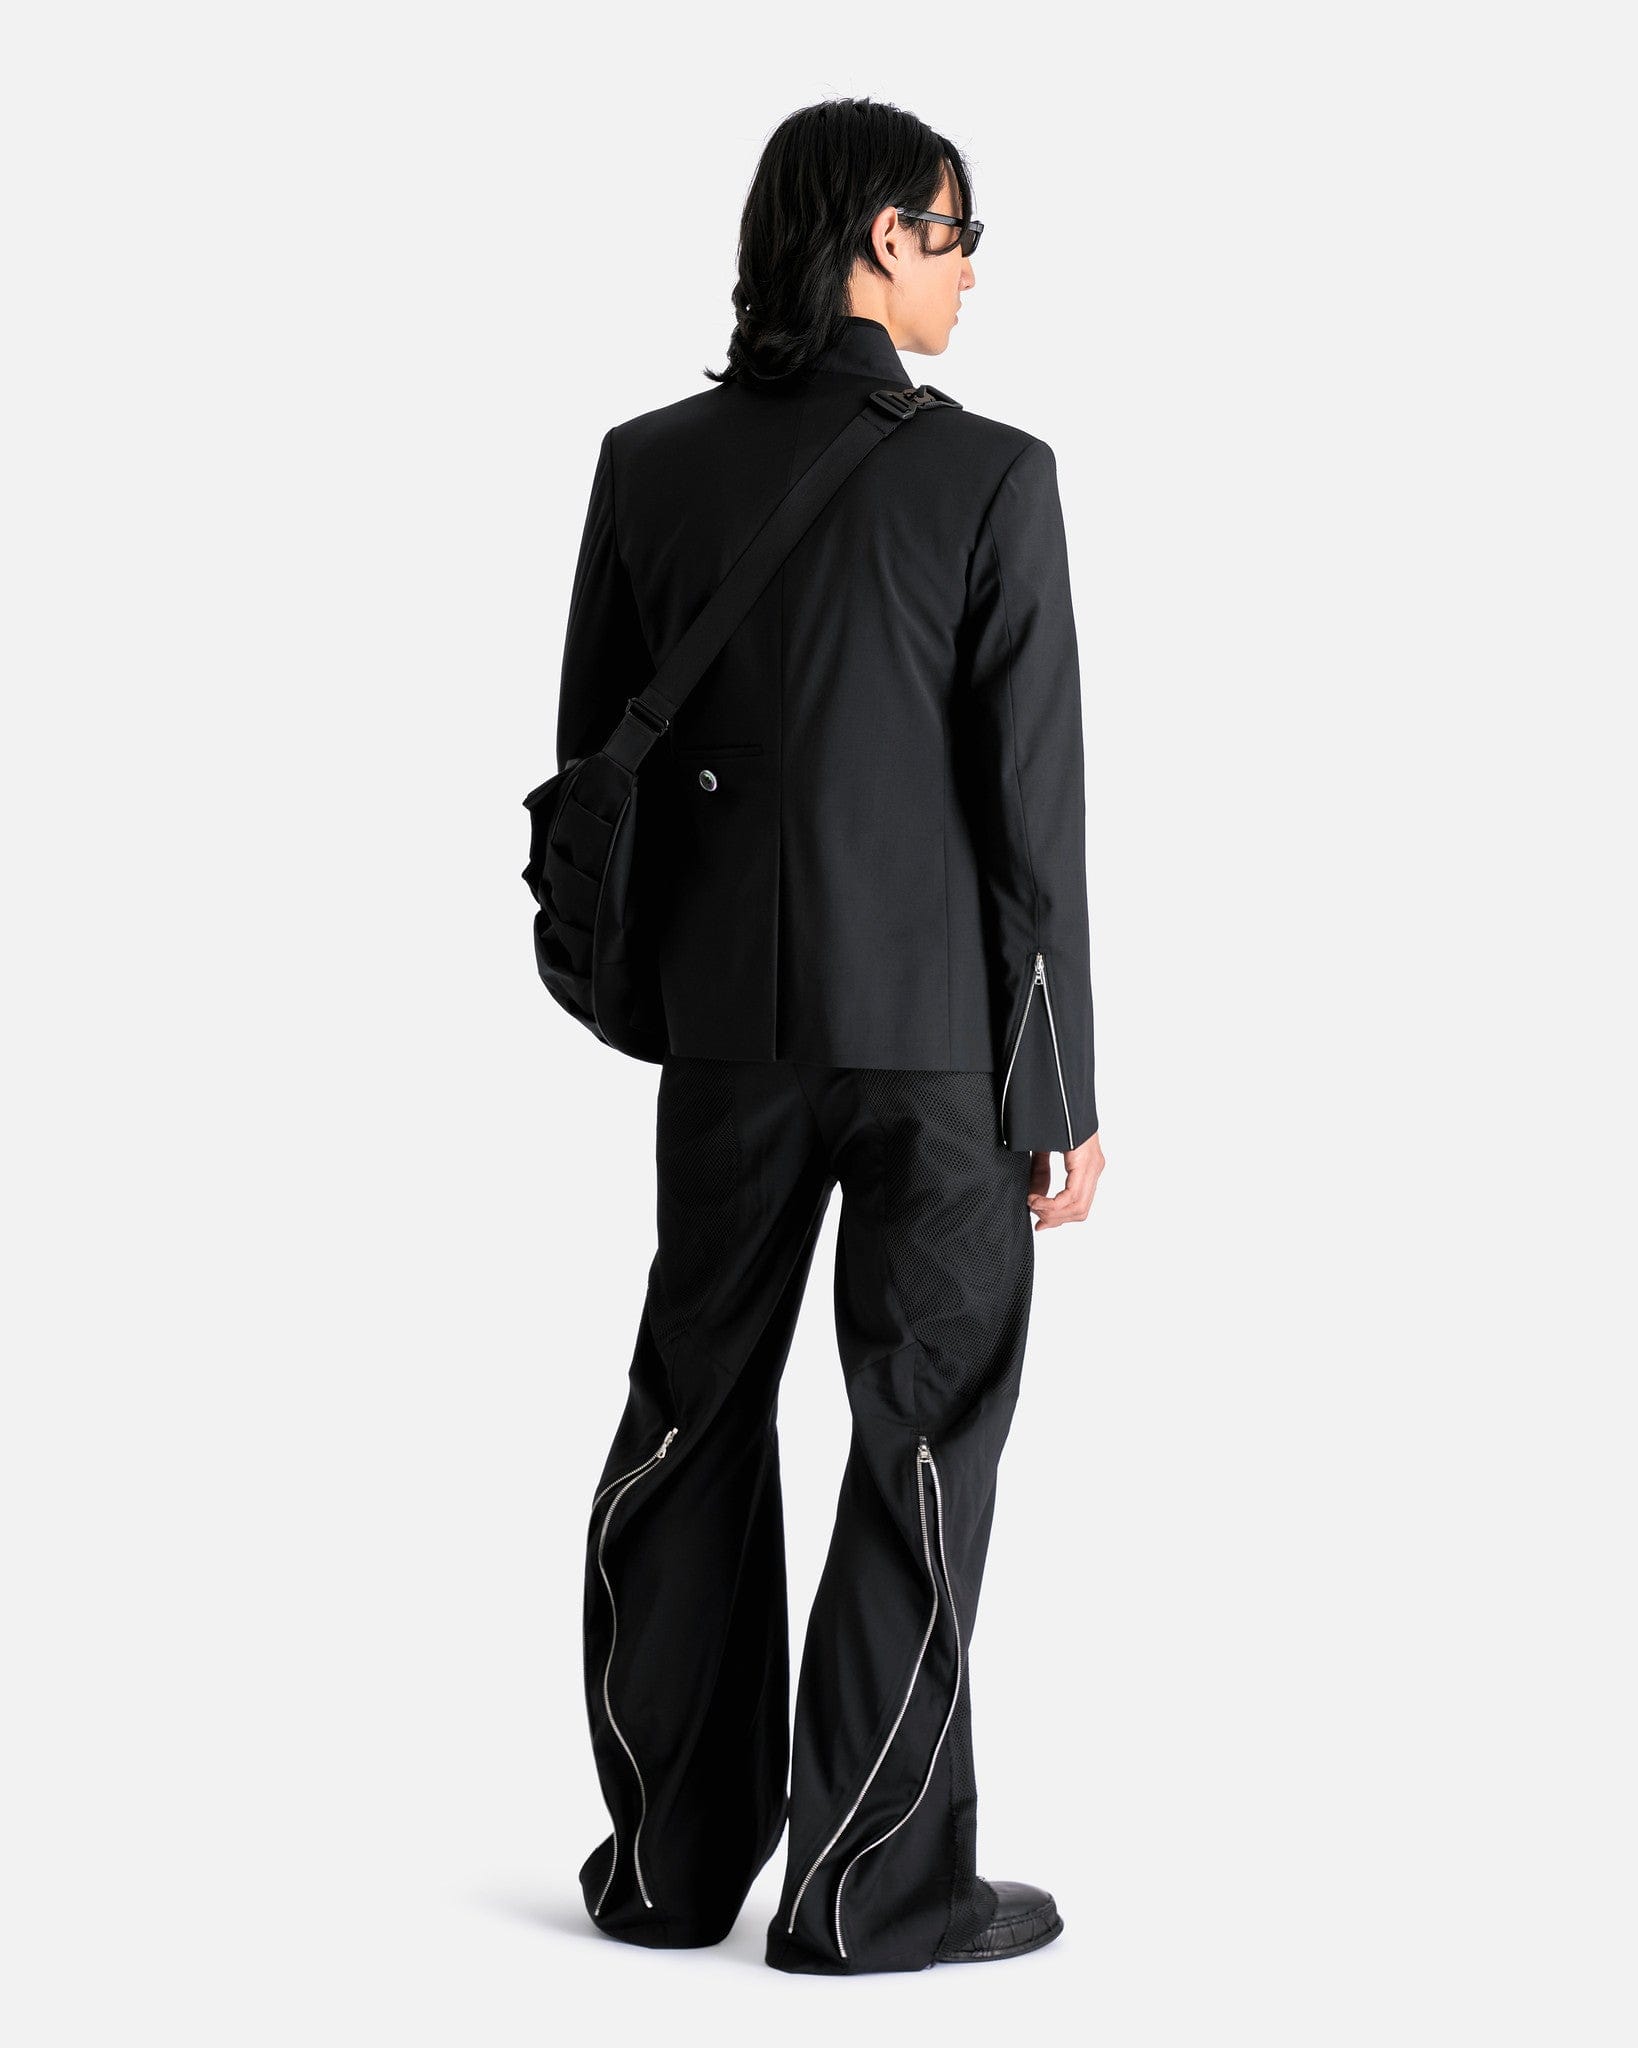 CMMAWEAR Men's Pants Articulated Back-Zip Trousers in Black